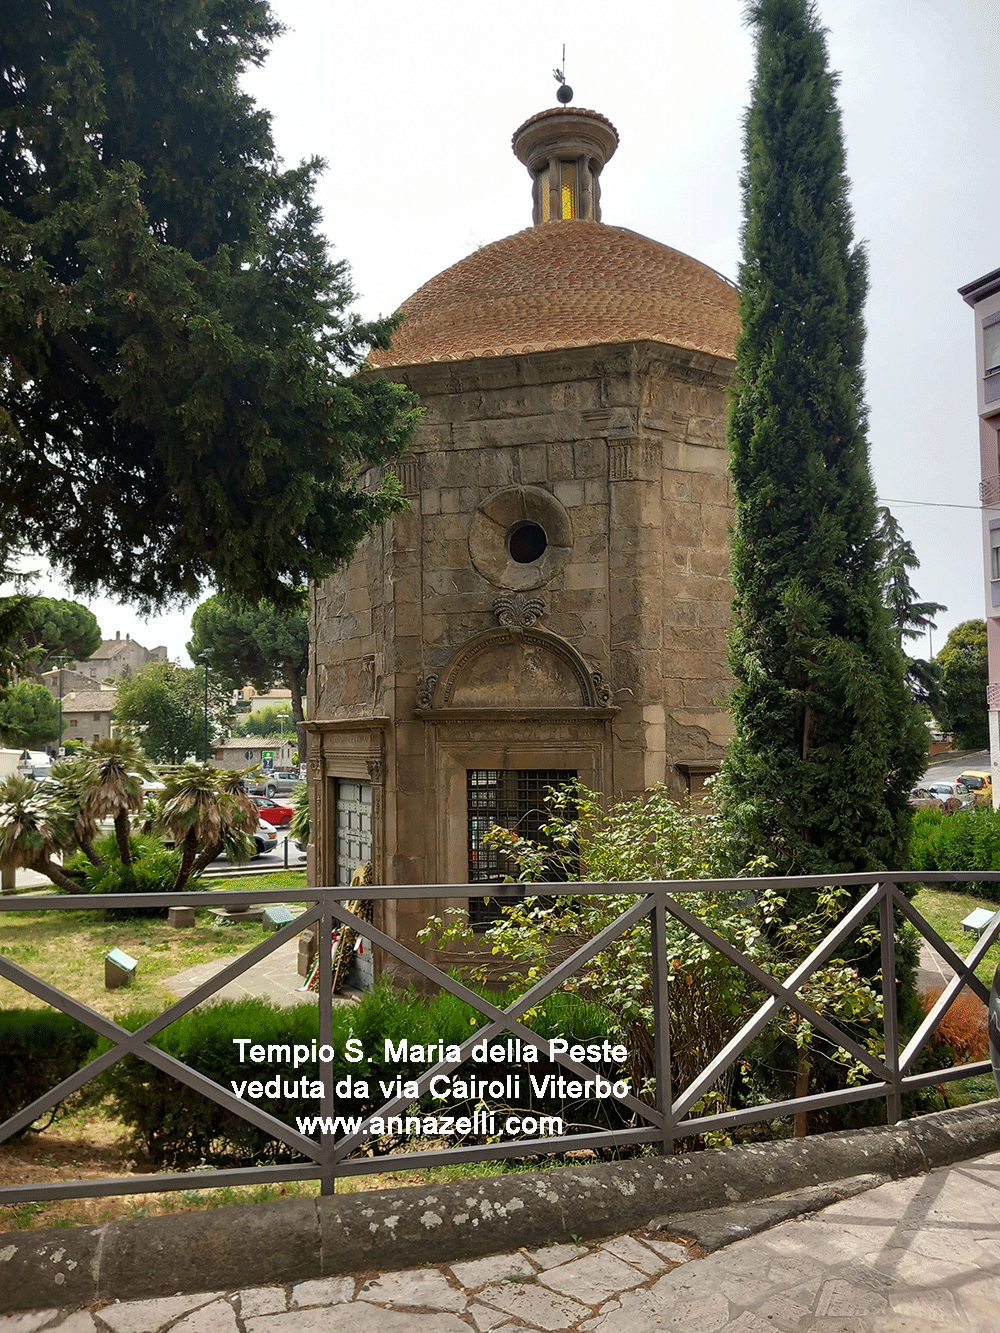 tempio santa maria della peste veduta da via cairoli viterbo info e foto anna zelli